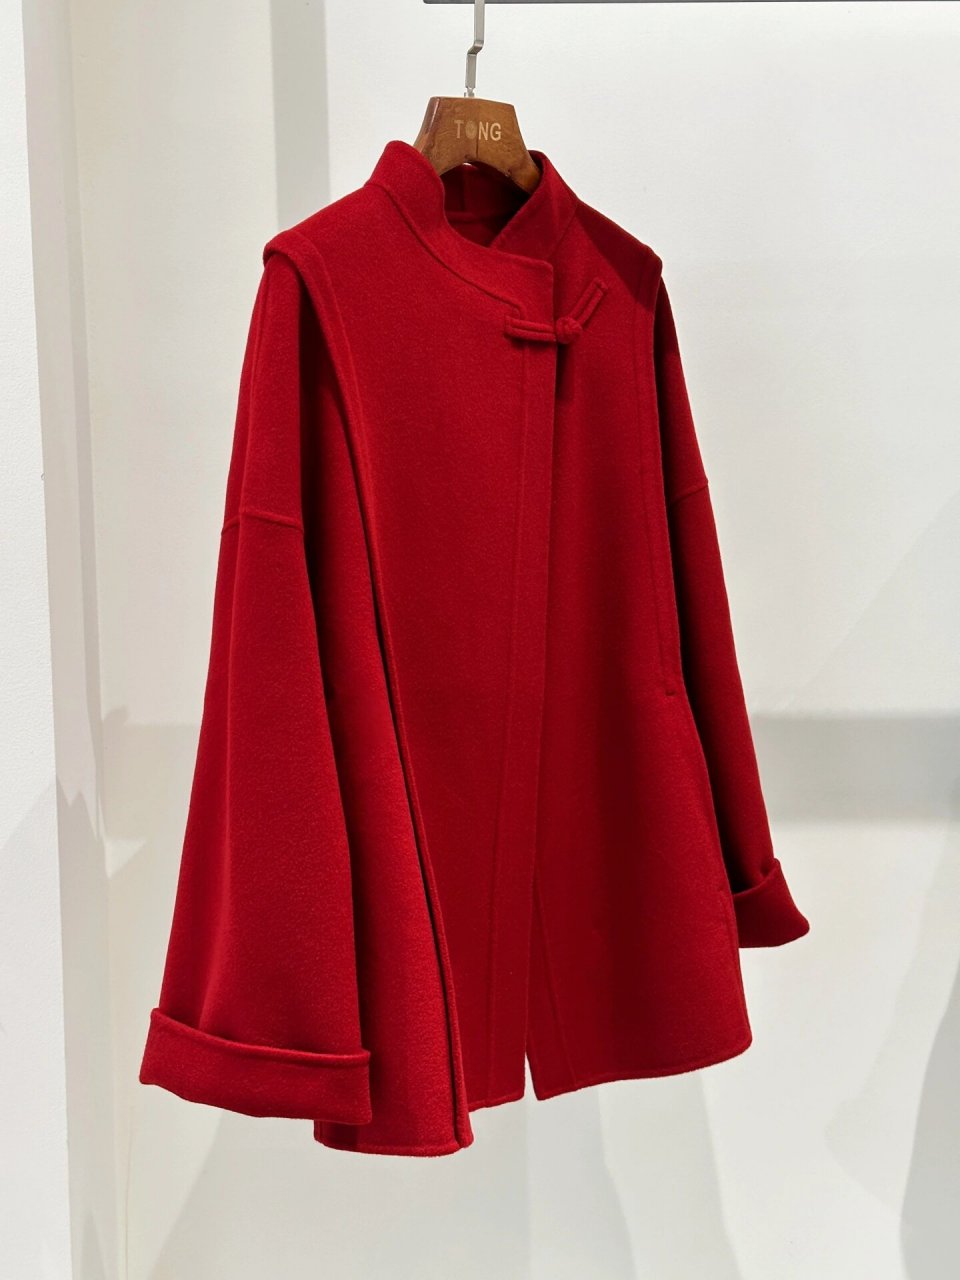 非常好看的拉菲红羊绒面料,手感顺滑 富有光泽 颜色显白,冬日值得拥有